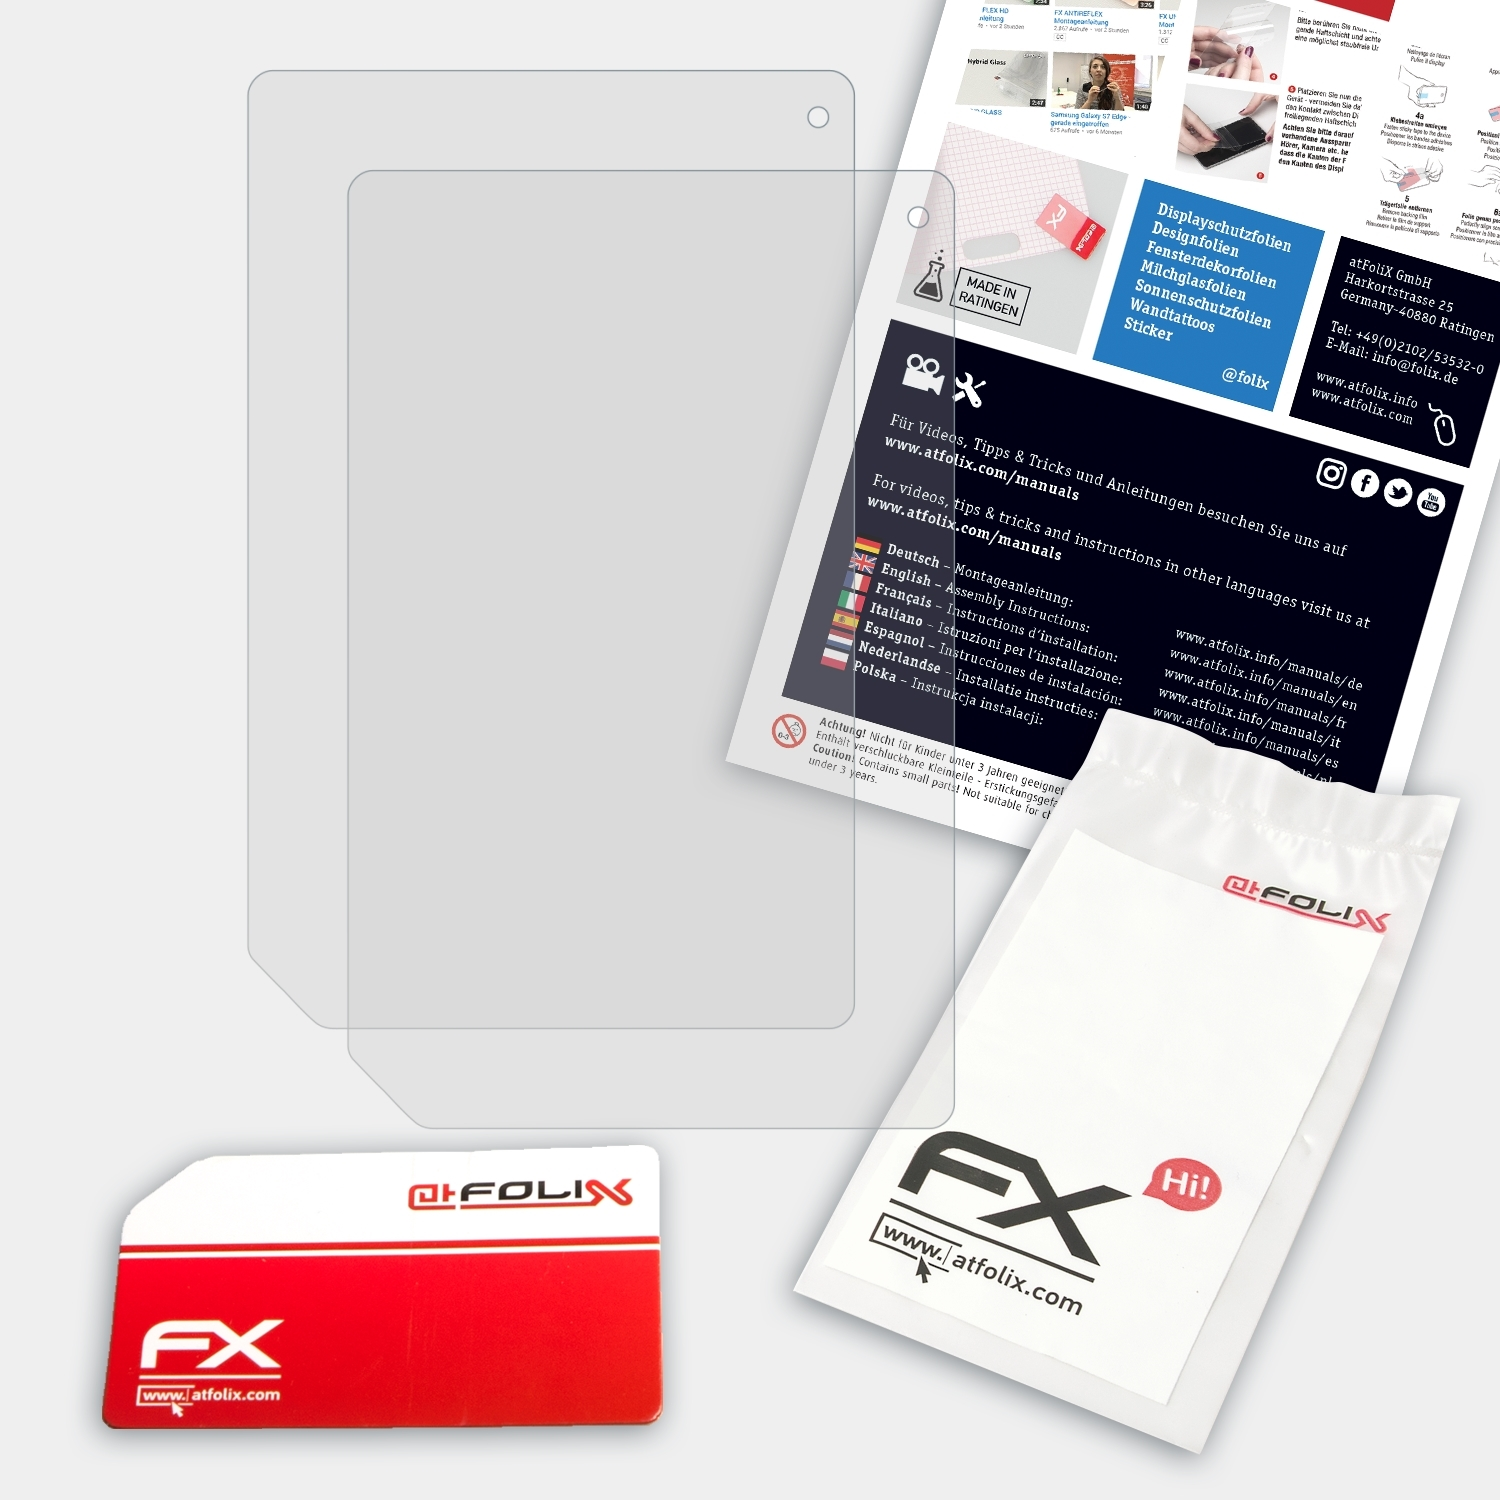 (B1-A71)) Acer 2x B1 Iconia ATFOLIX FX-Antireflex Displayschutz(für